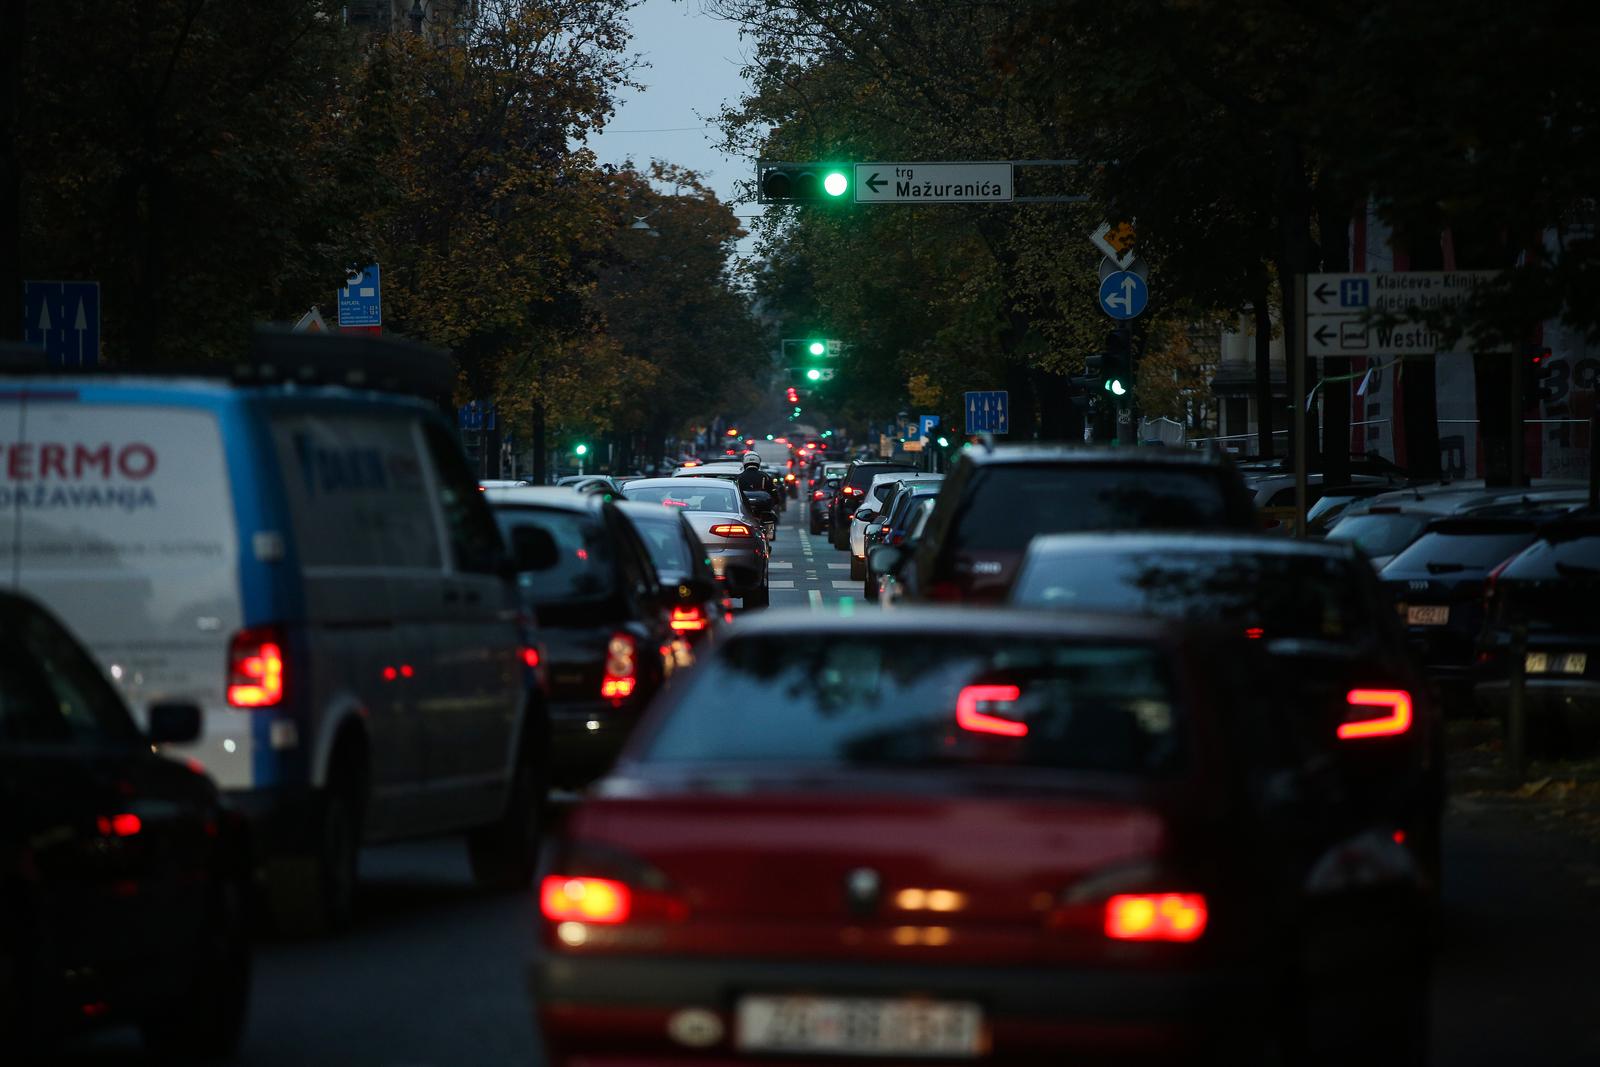 08.11.2022., Zagreb - Zbog pokvarenog auta ukrajinskih registracija stvorila se velika guzva na zelenom valu. Photo: Zeljko Hladika/PIXSELL